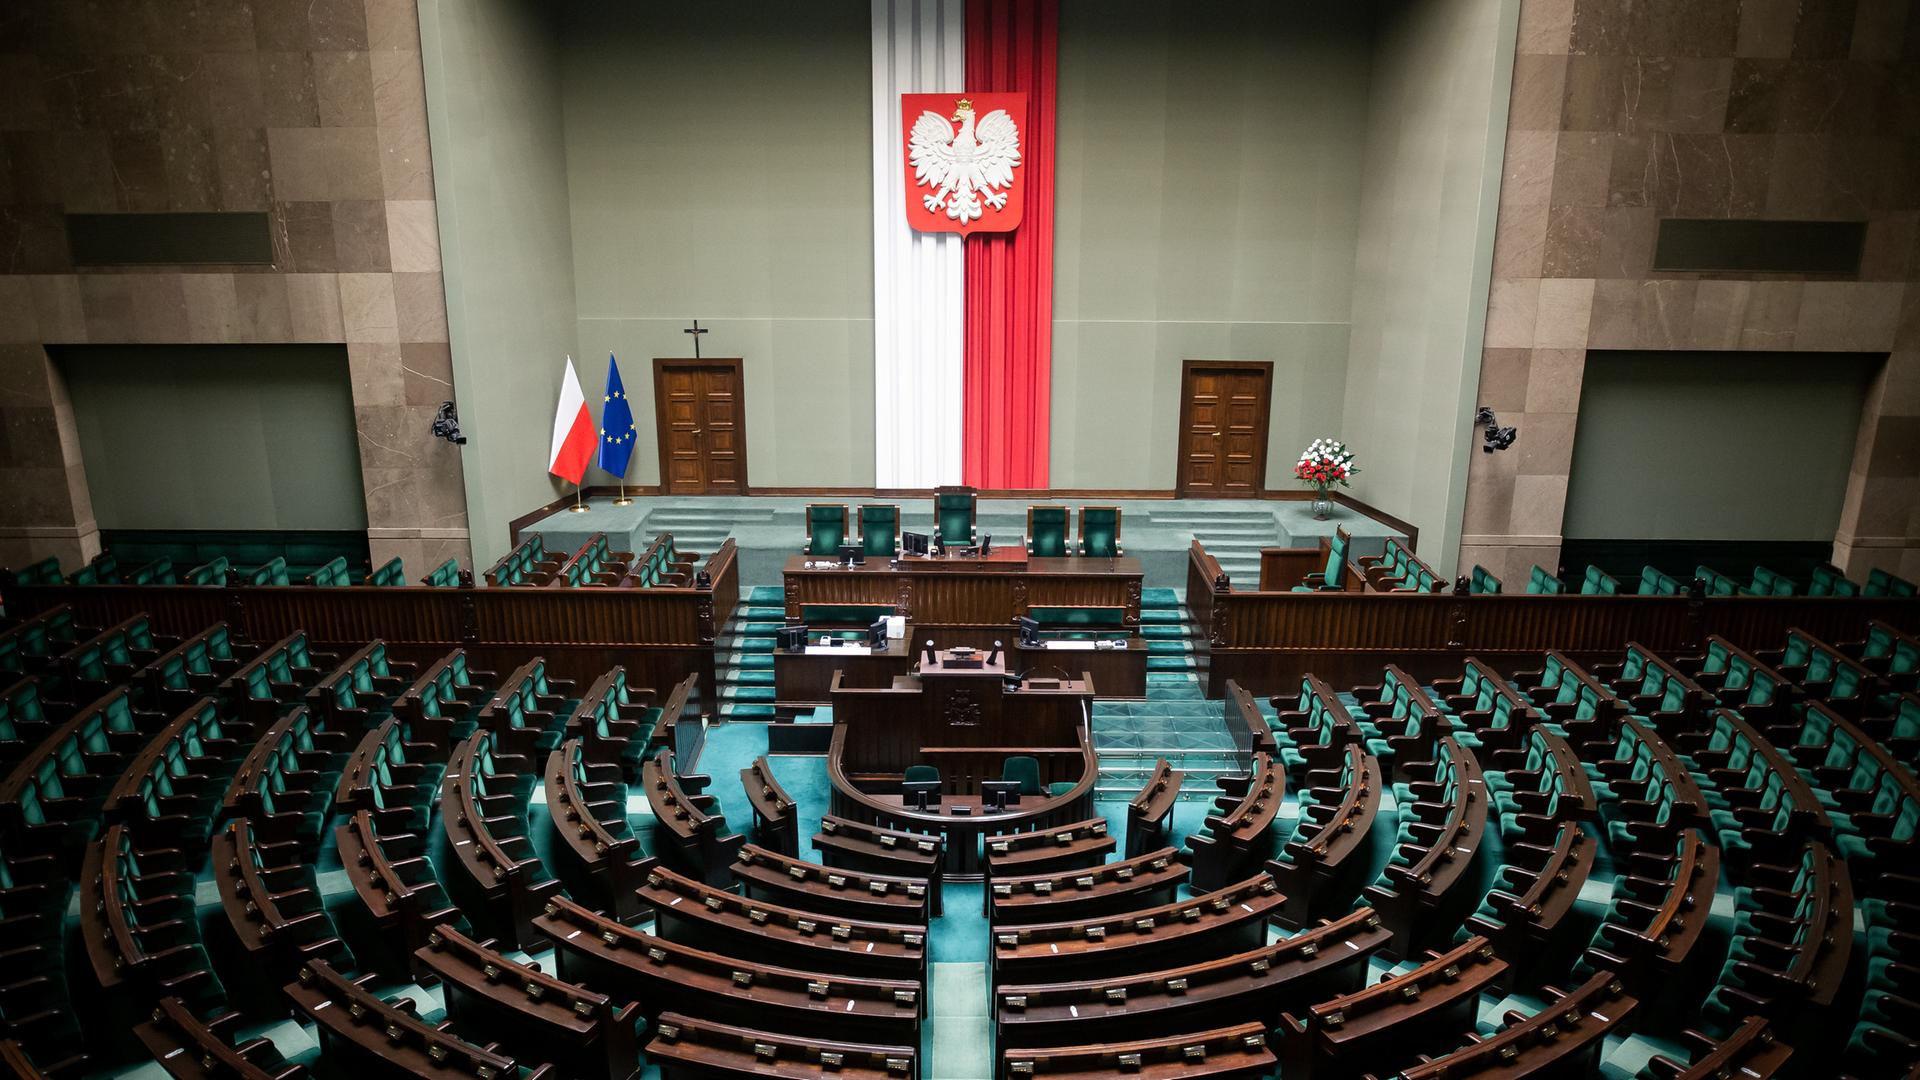 Zu sehen sind die leeren Reihen des polnischen Parlaments